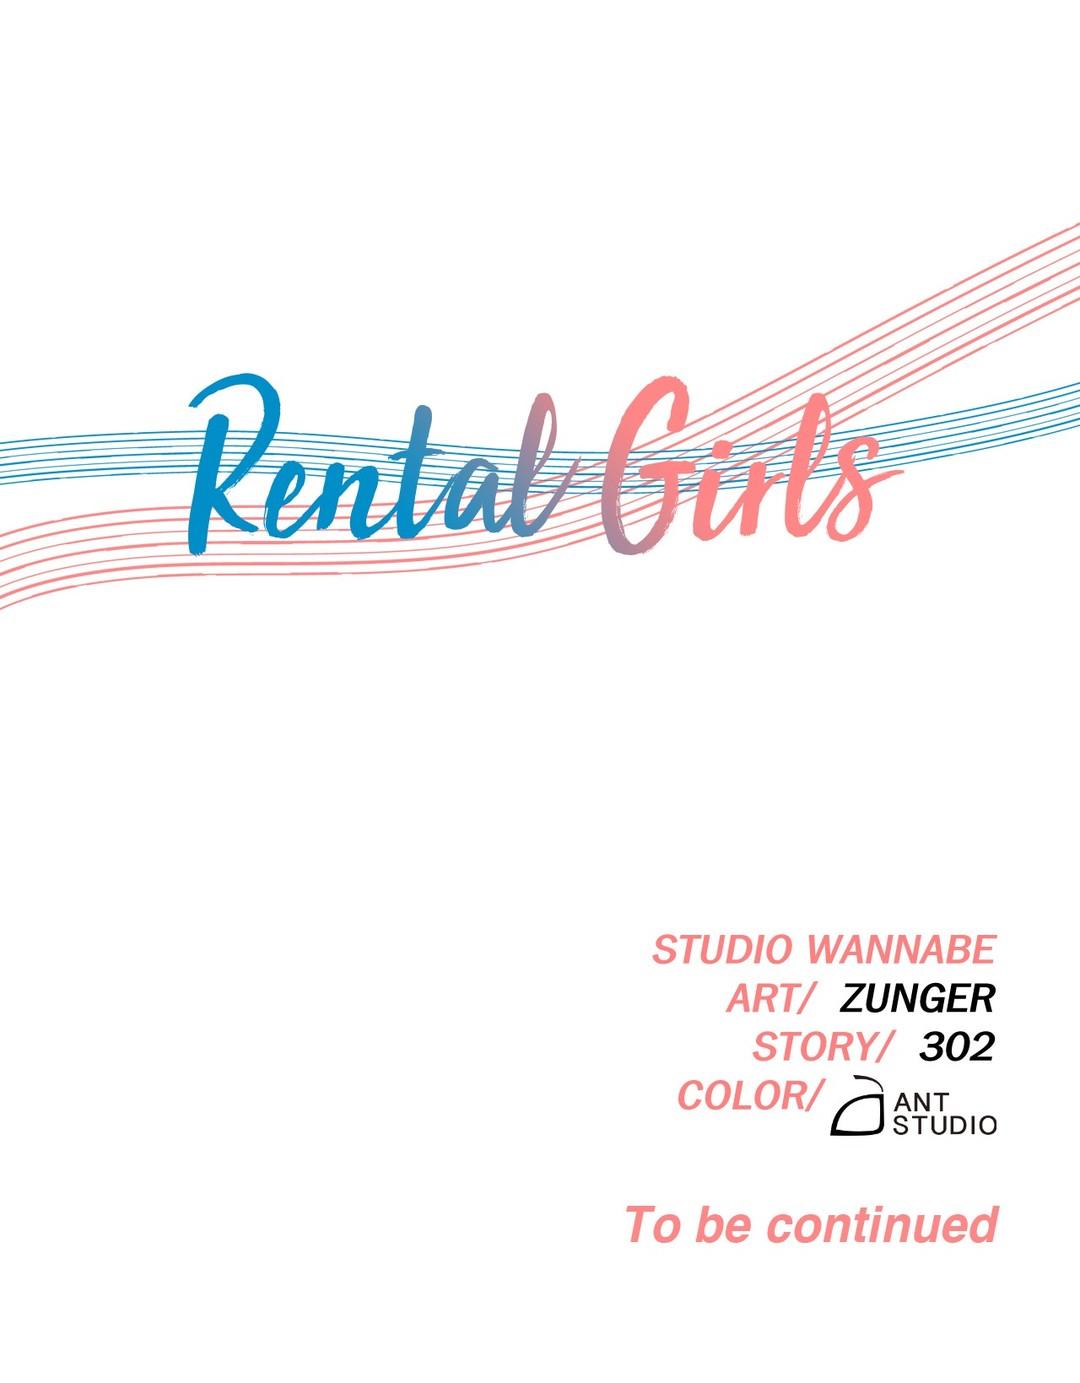 Rental Girls Ch 17 -19 93